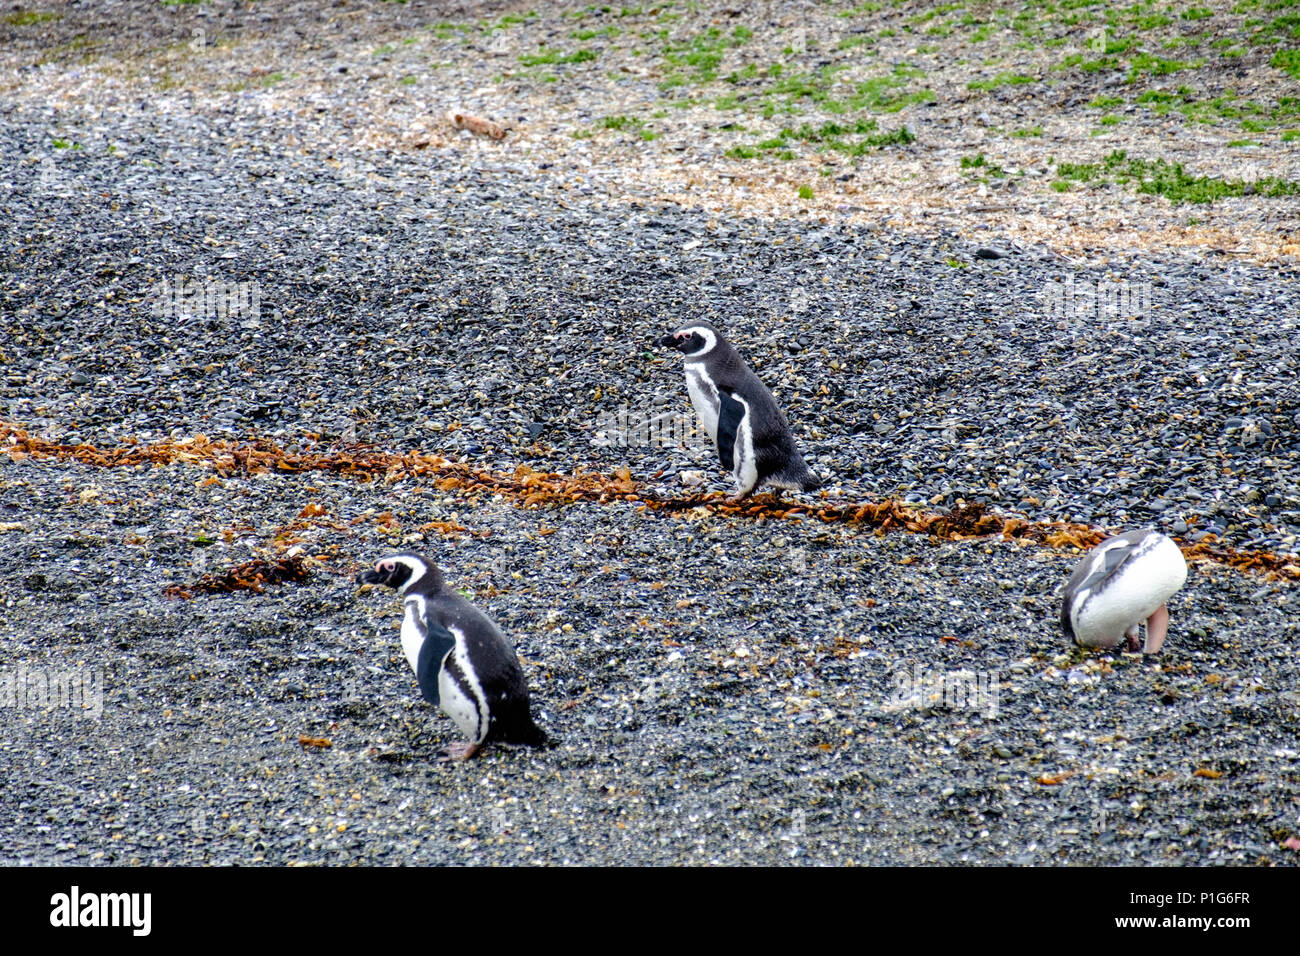 Trois pingouins magellaniques sont sur une plage d'une île dans le canal Beagle. Ils sont les premiers à arriver. Beaucoup y rejoindront plus tard. Banque D'Images